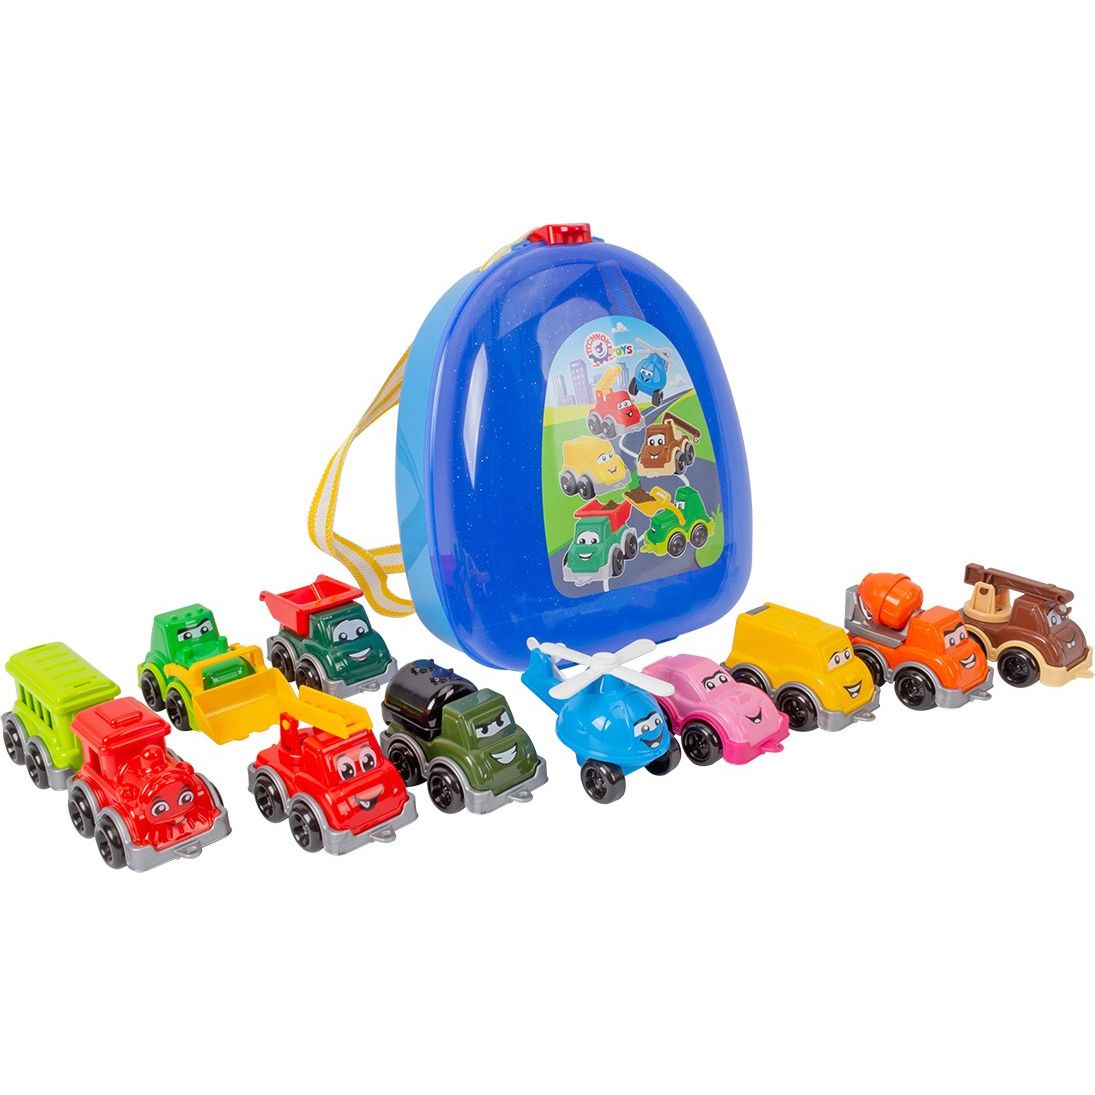 Набор игрушечных машинок ТехноК Транспорт Мини (9253) - фото 2